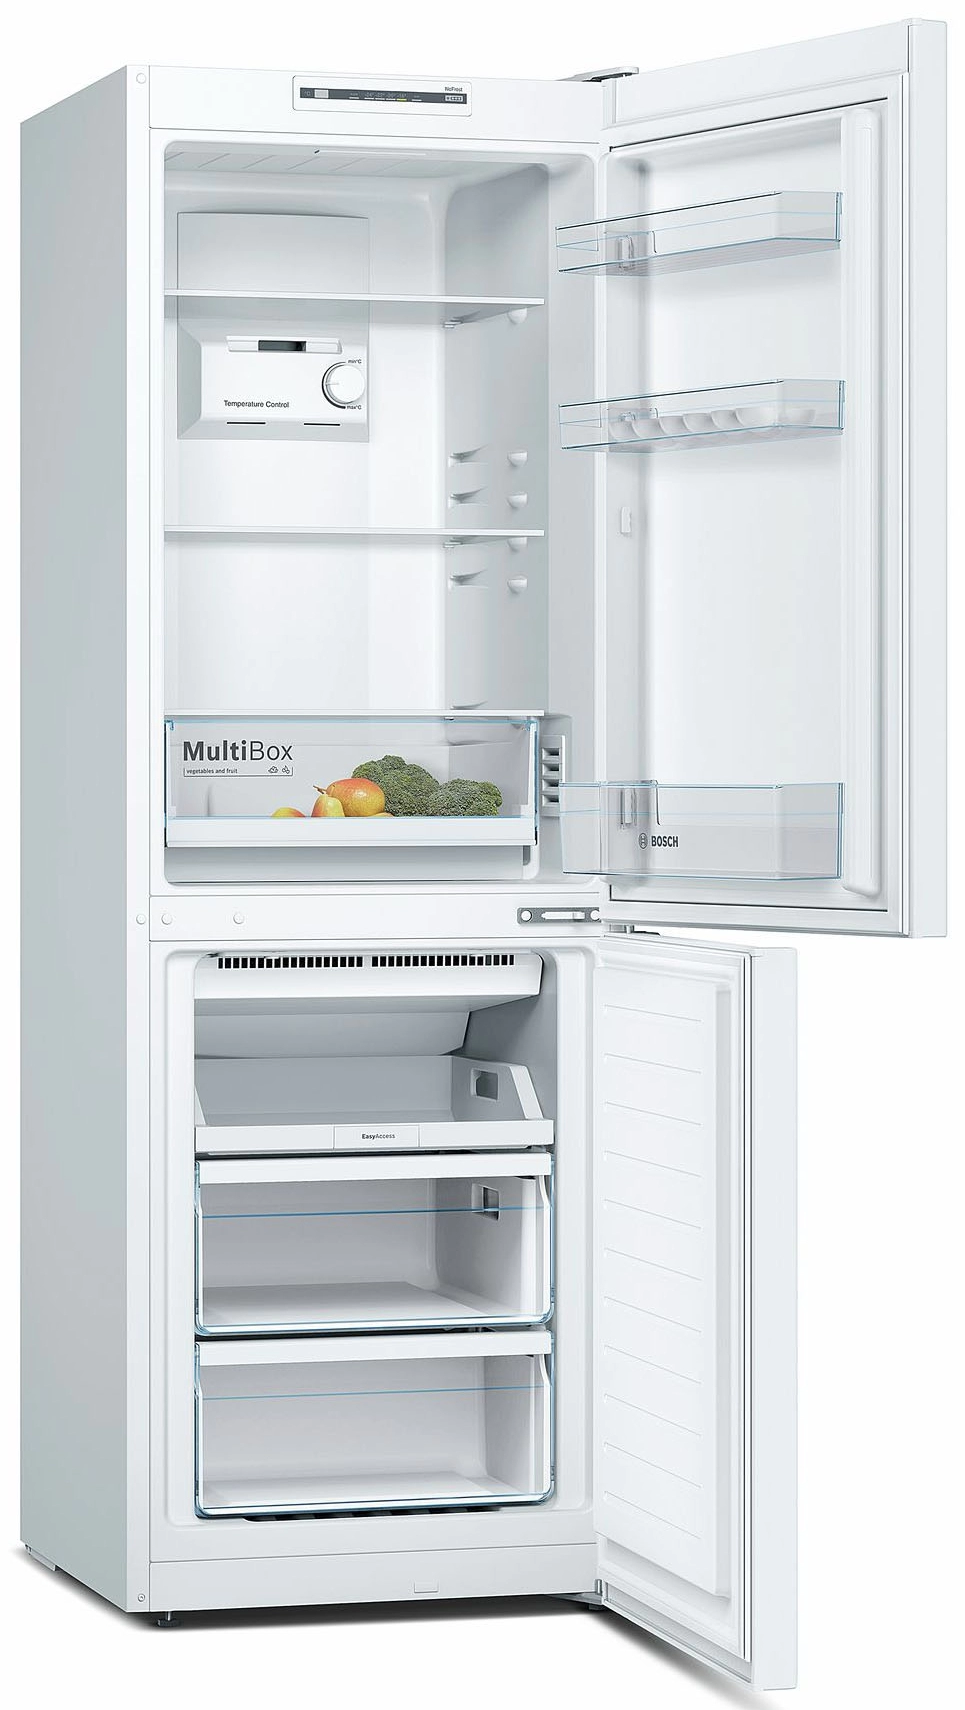 Холодильник с нижней морозильной камерой Bosch KGN33NW21, 279 л, 176 см, A+, Белый